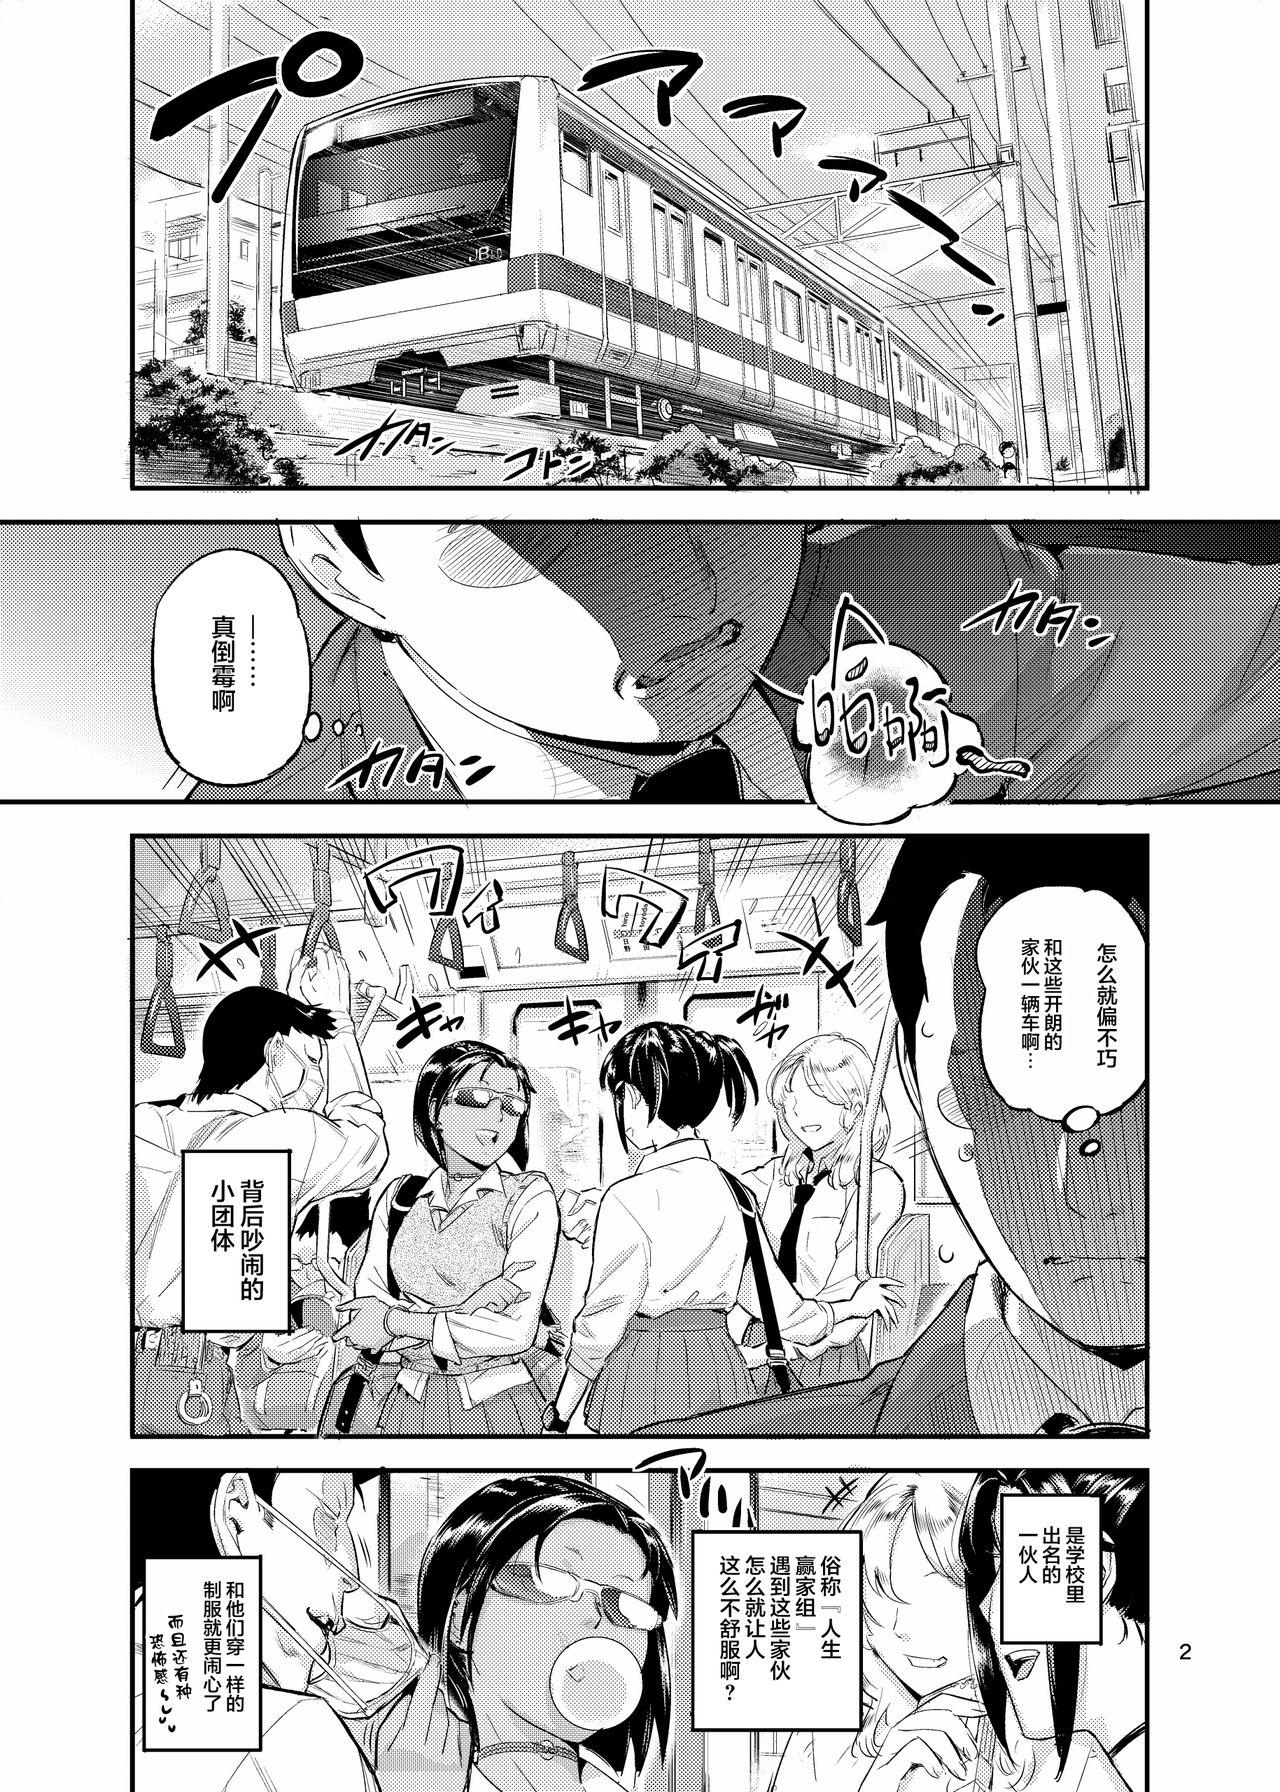 Pareja Yodare Mitsuba! - Original White - Page 2